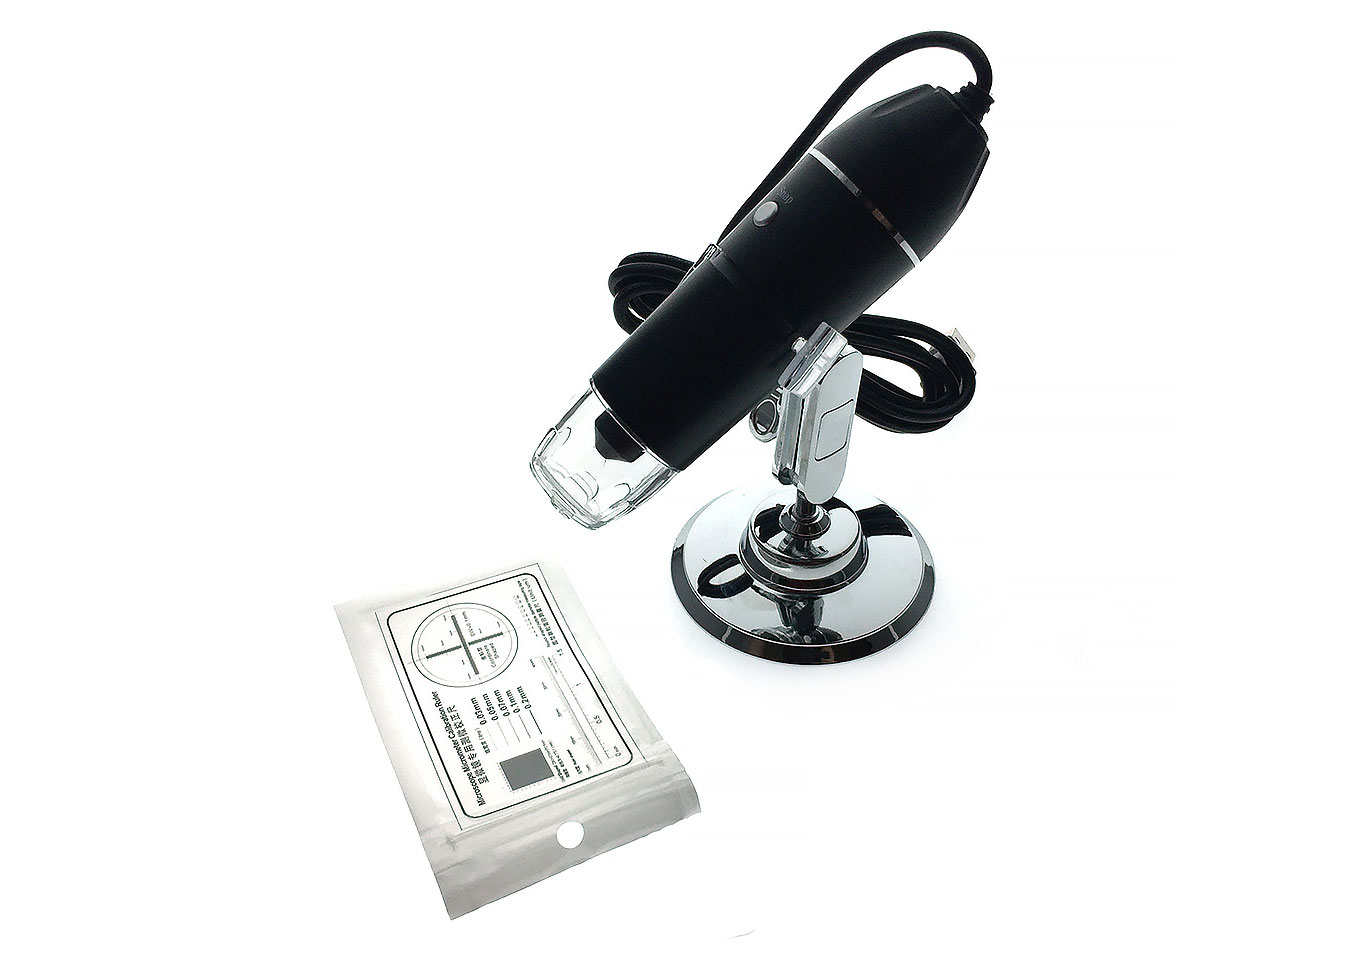 Микроскоп детский Espada USB-микроскоп цифровой U1600x 76505 портативный цифровой usb микроскоп espada e u500x c камерой 0 3 мп и увеличением 500x